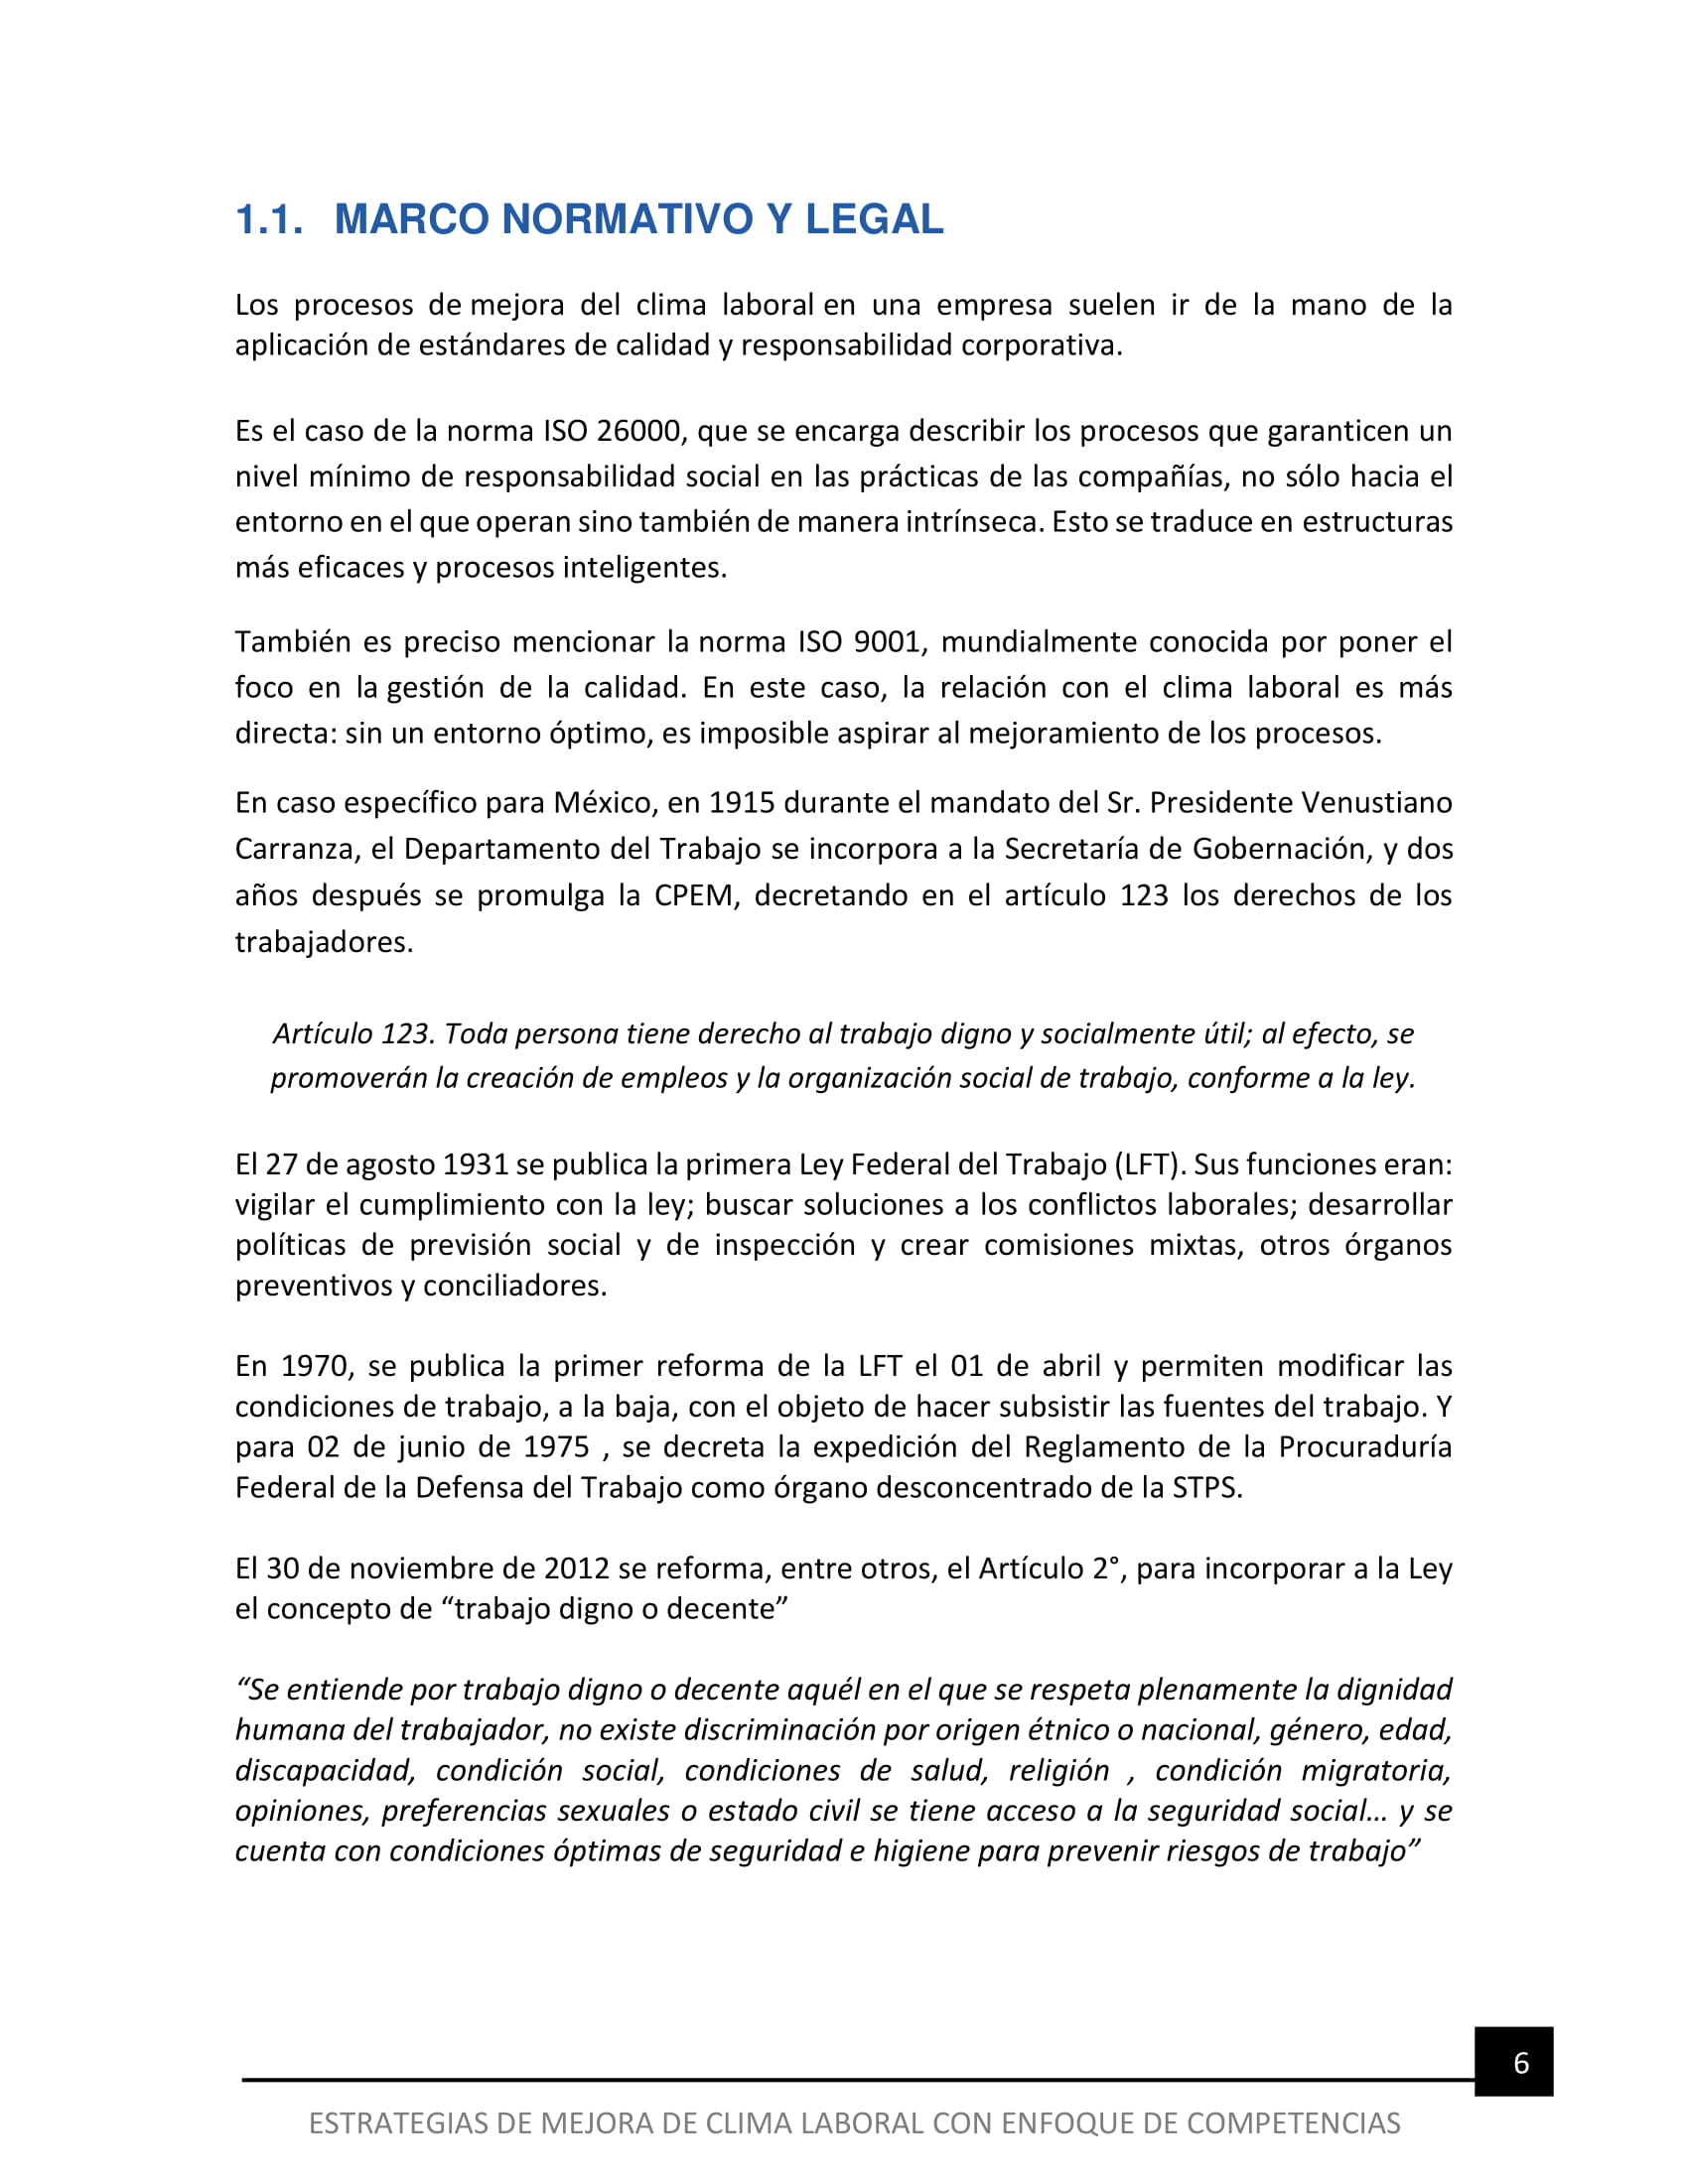 Libro Consulta _ ESTRATEGIAS DE MEJORA DE CLIMA LABORAL CON ENFOQUE DE COMPETENCIAS-06